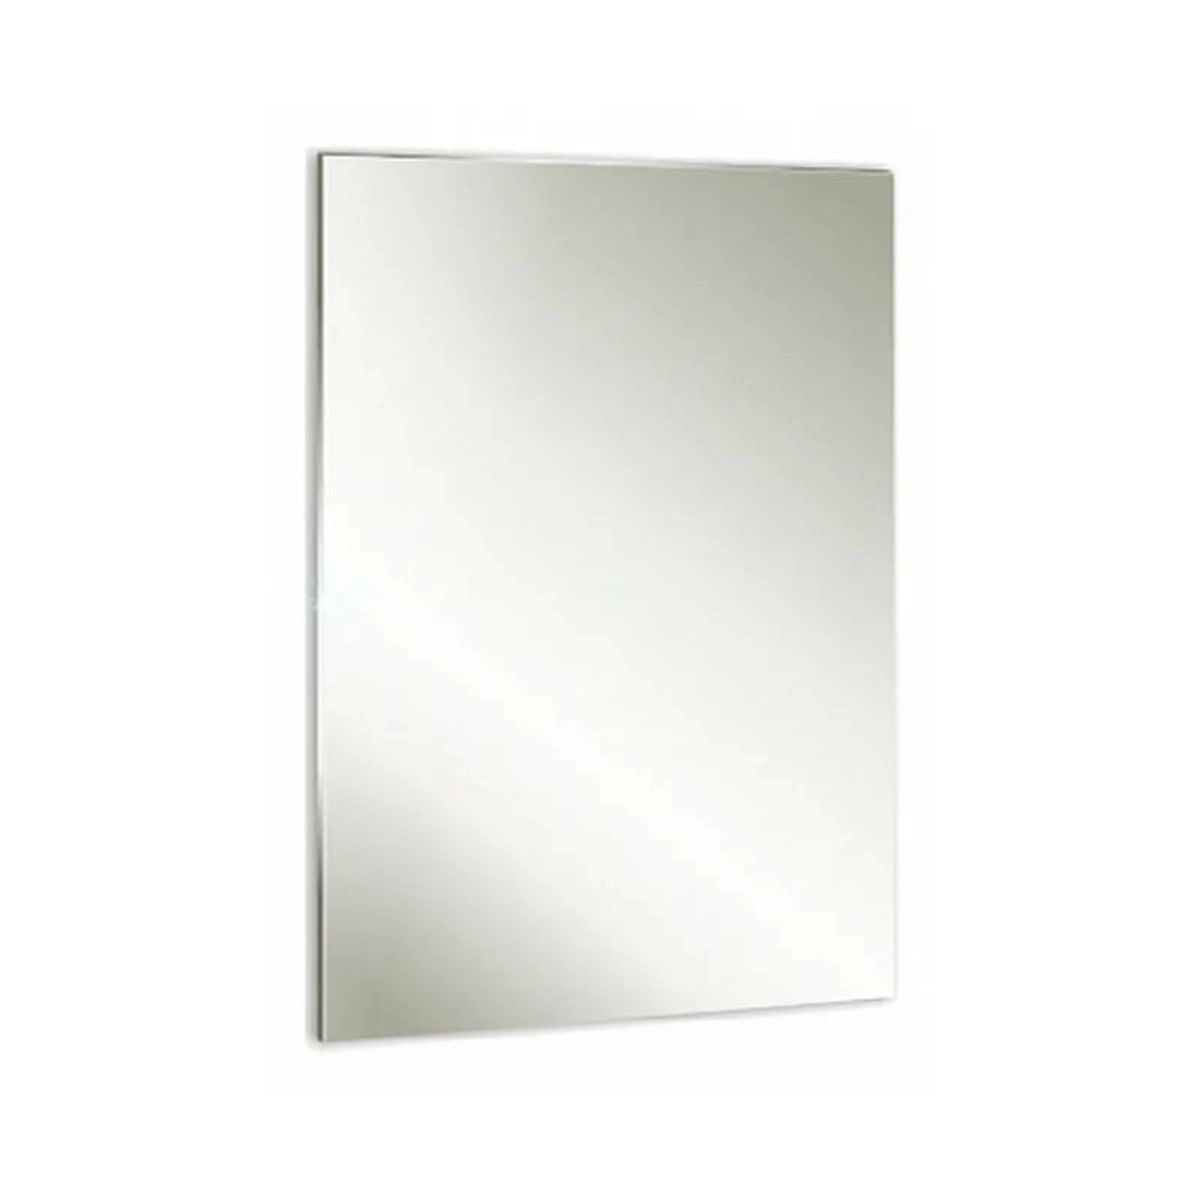 Зеркало для ванной Mixline 39х59 прямоугольное, без подсветки - купить в Мегамаркет МСК Никифорово, цена на Мегамаркет